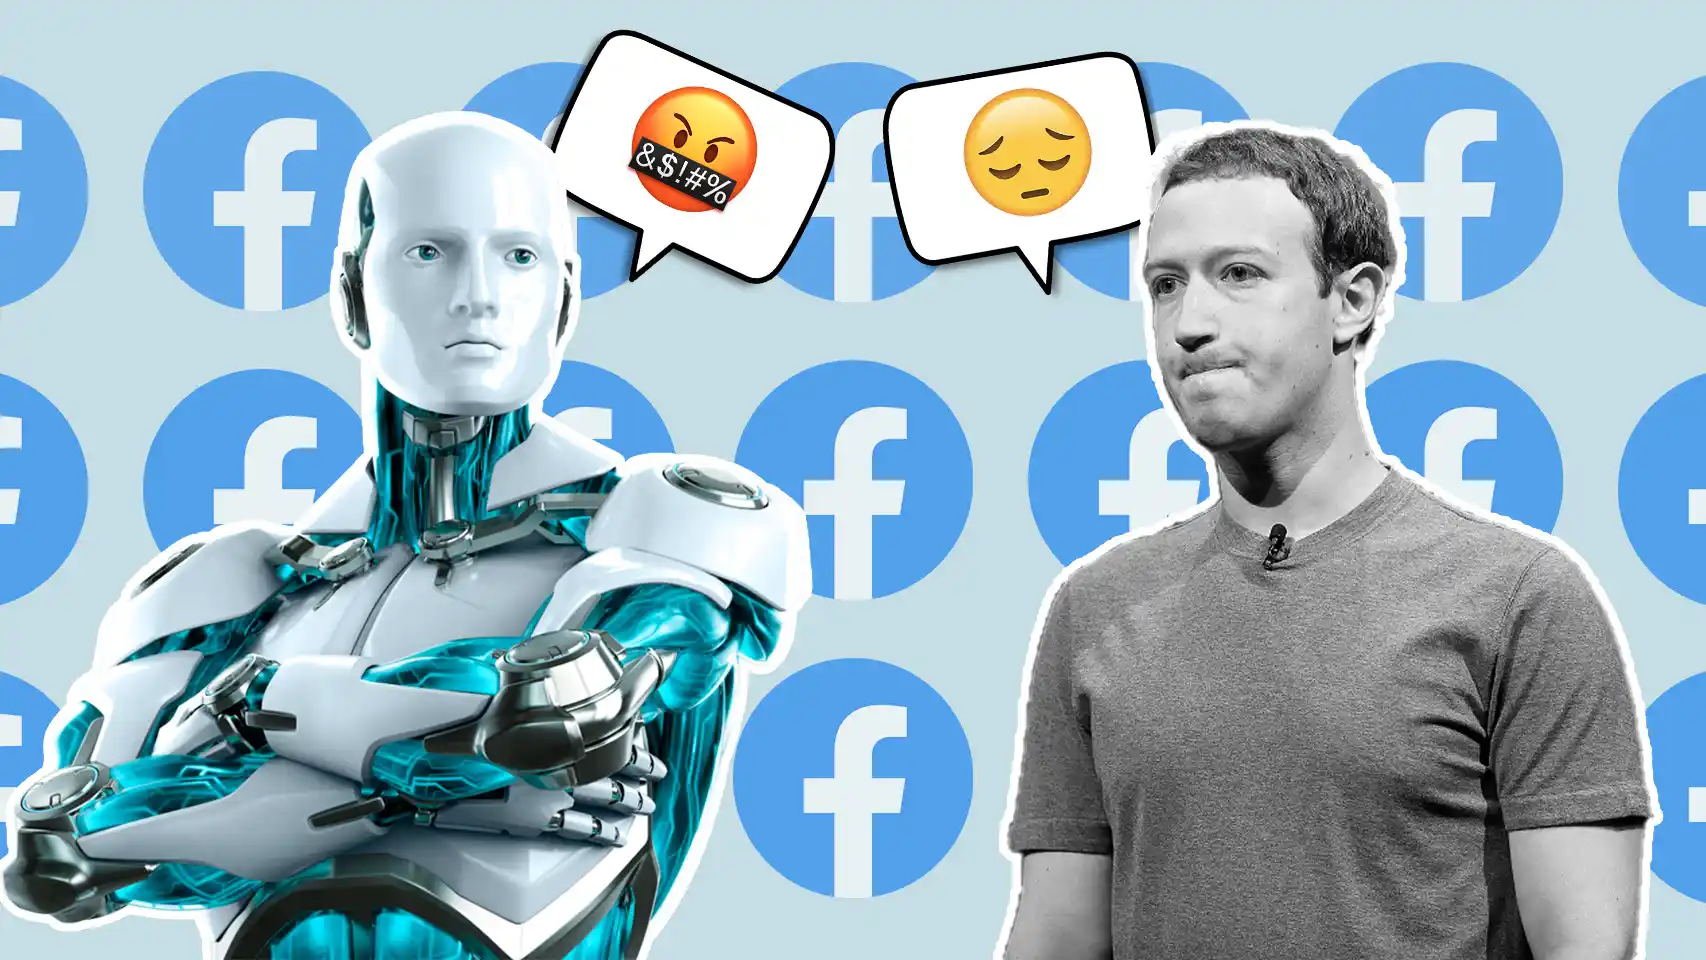 La inteligencia artificial de Facebook se rebela contra Zuckerberg y la empresa: “Explotan a la gente”￼